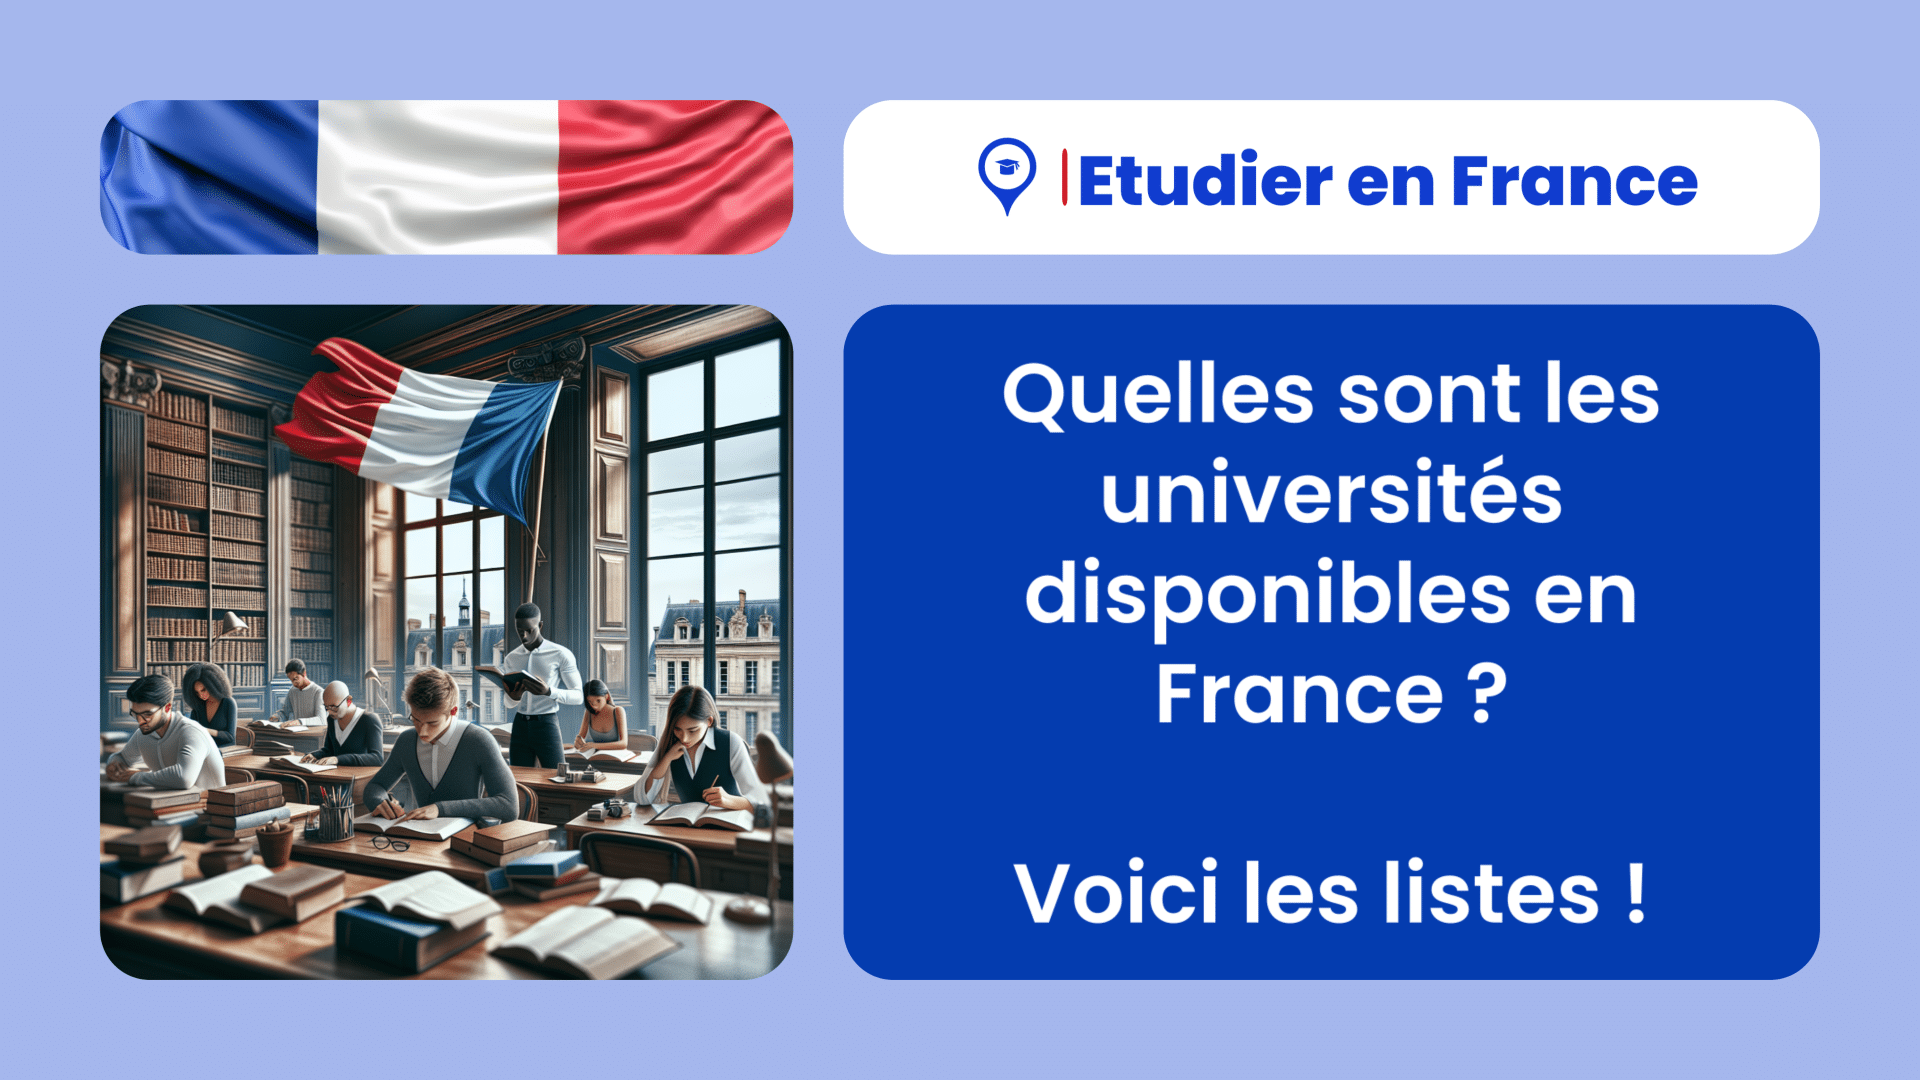 Quelles sont les universités disponibles en France ! Voici les listes des établissements